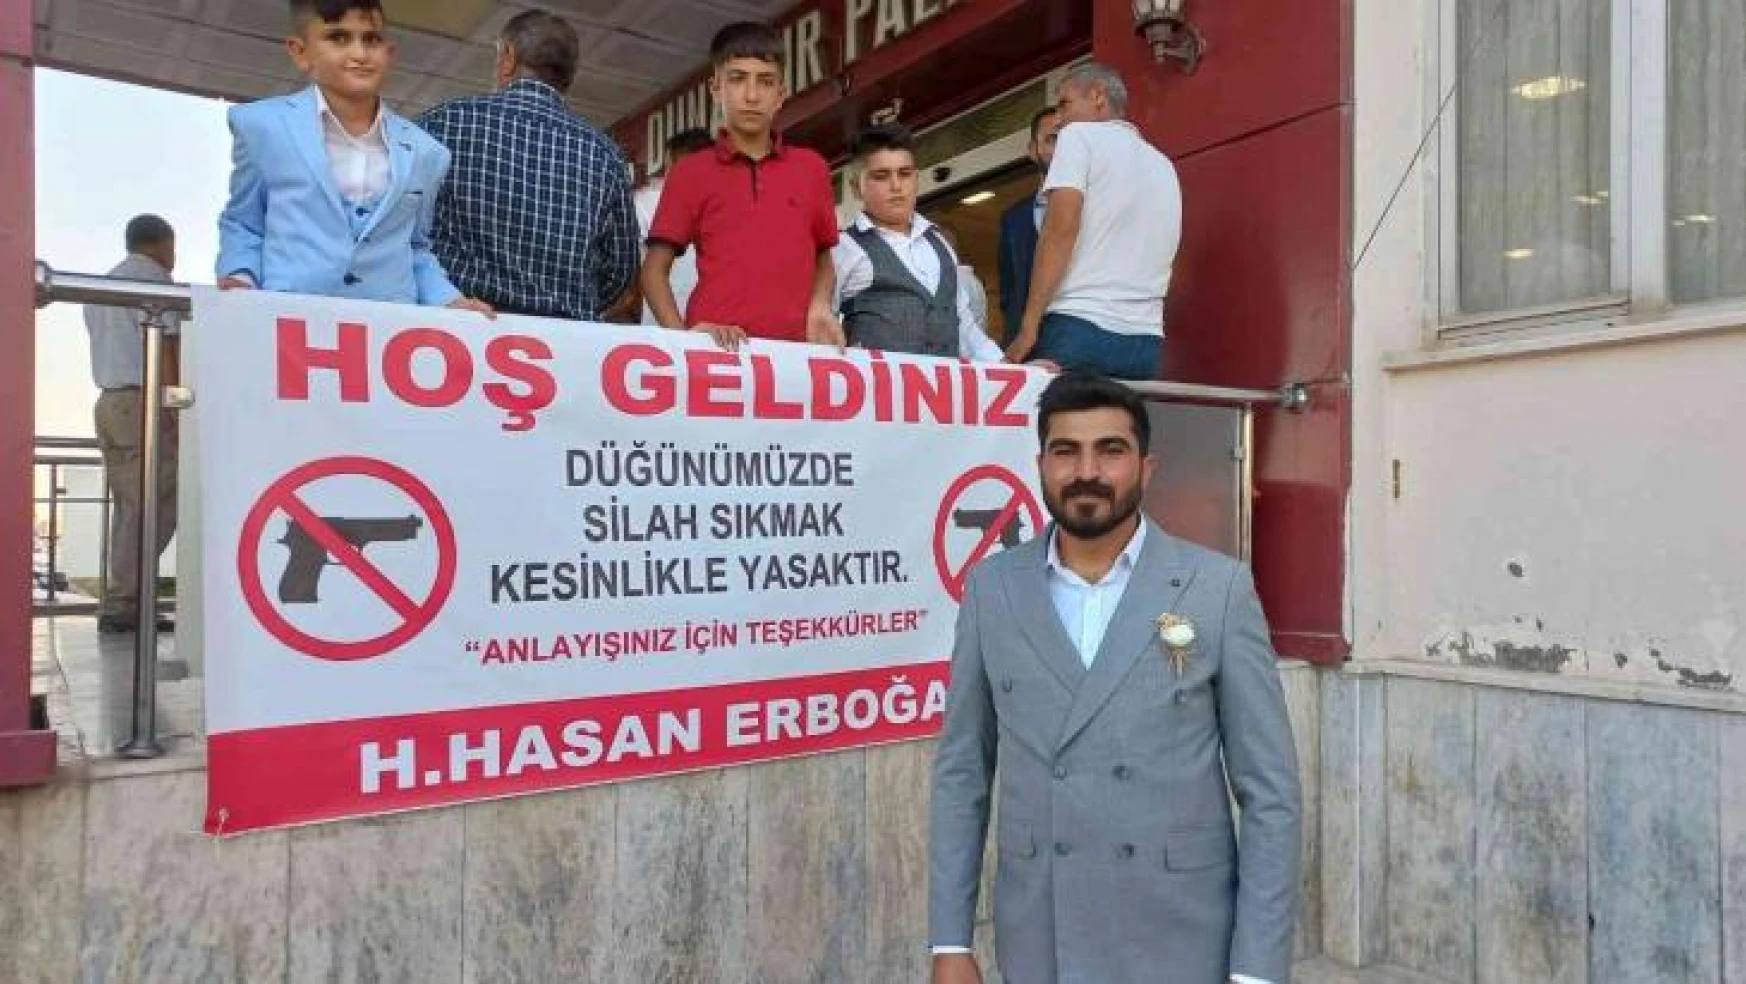 Mardin'deki aşiret düğününde örnek pankart: 'Düğünümüzde silah sıkmak kesinlikle yasaktır'